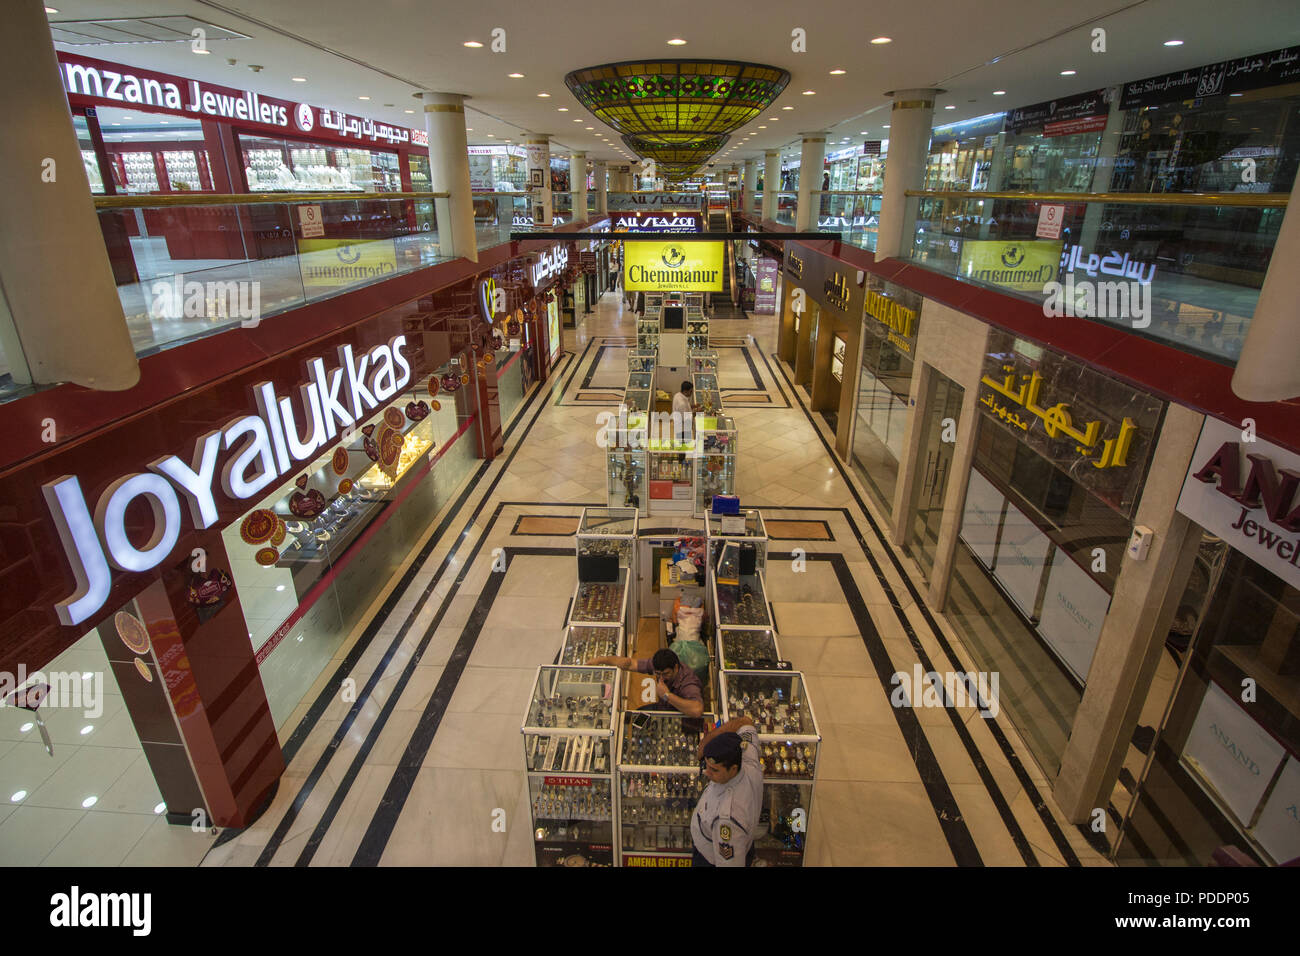 Gold City Mall à Manama, Bahreïn, est un centre commercial de détail spécialisés pour toutes les exigences en matière de bijoux, avec une variété d'ornements scintillants Banque D'Images